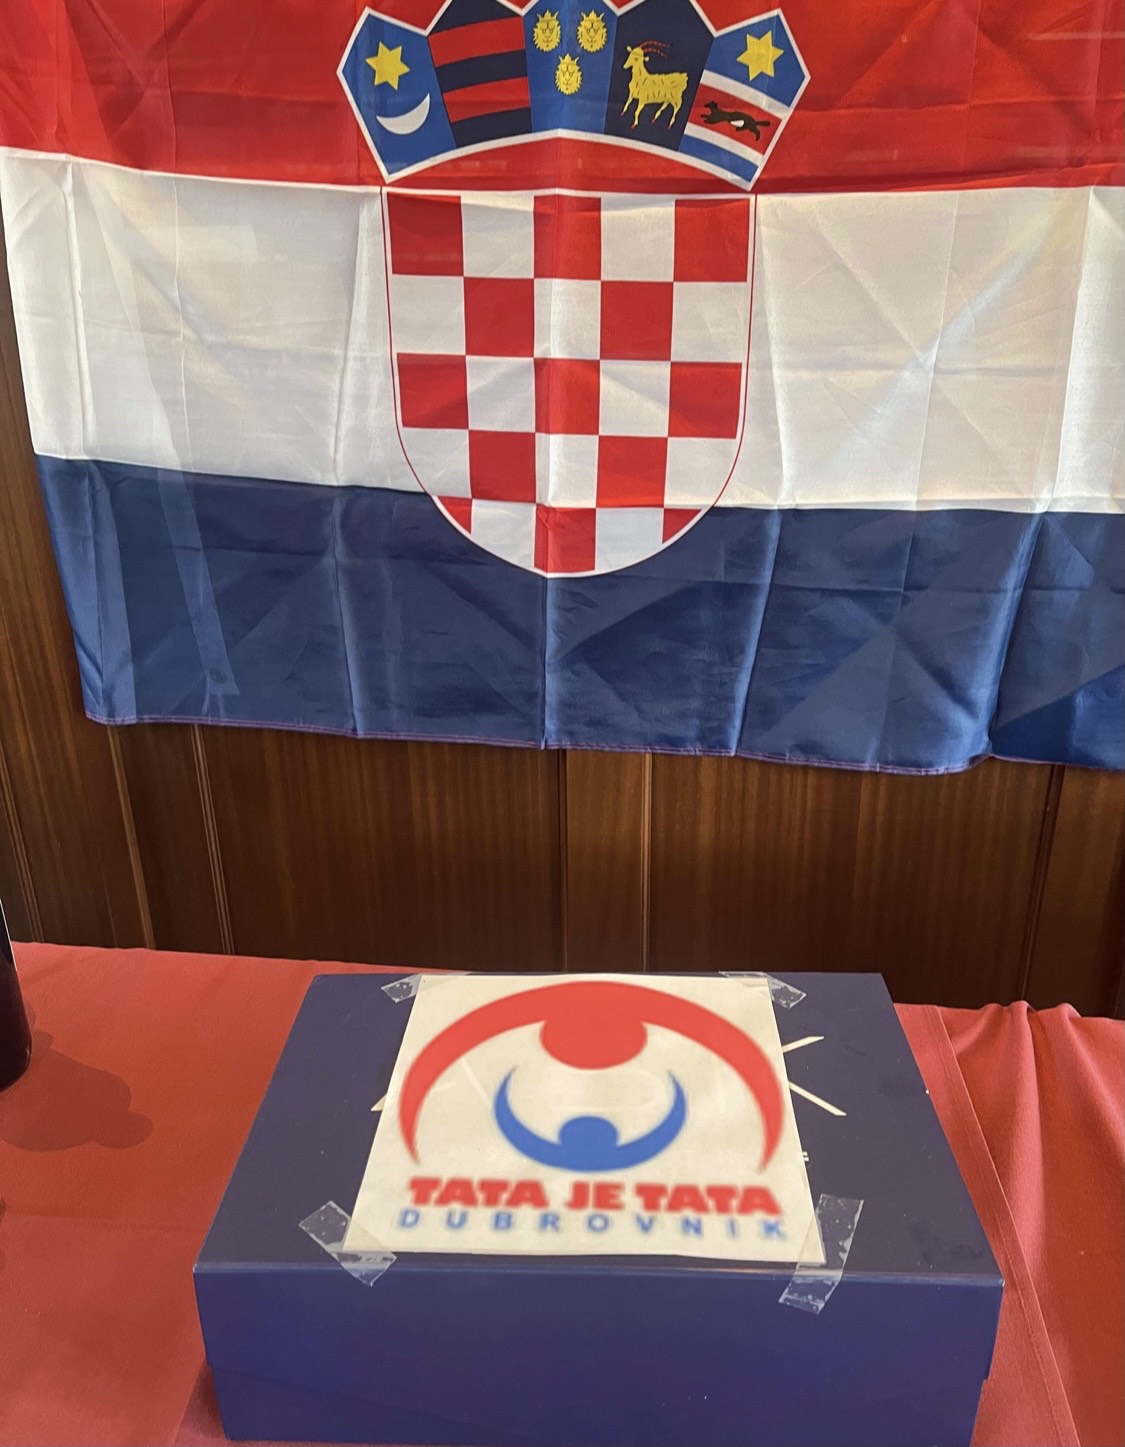 Croatian humanitarian fest in New York